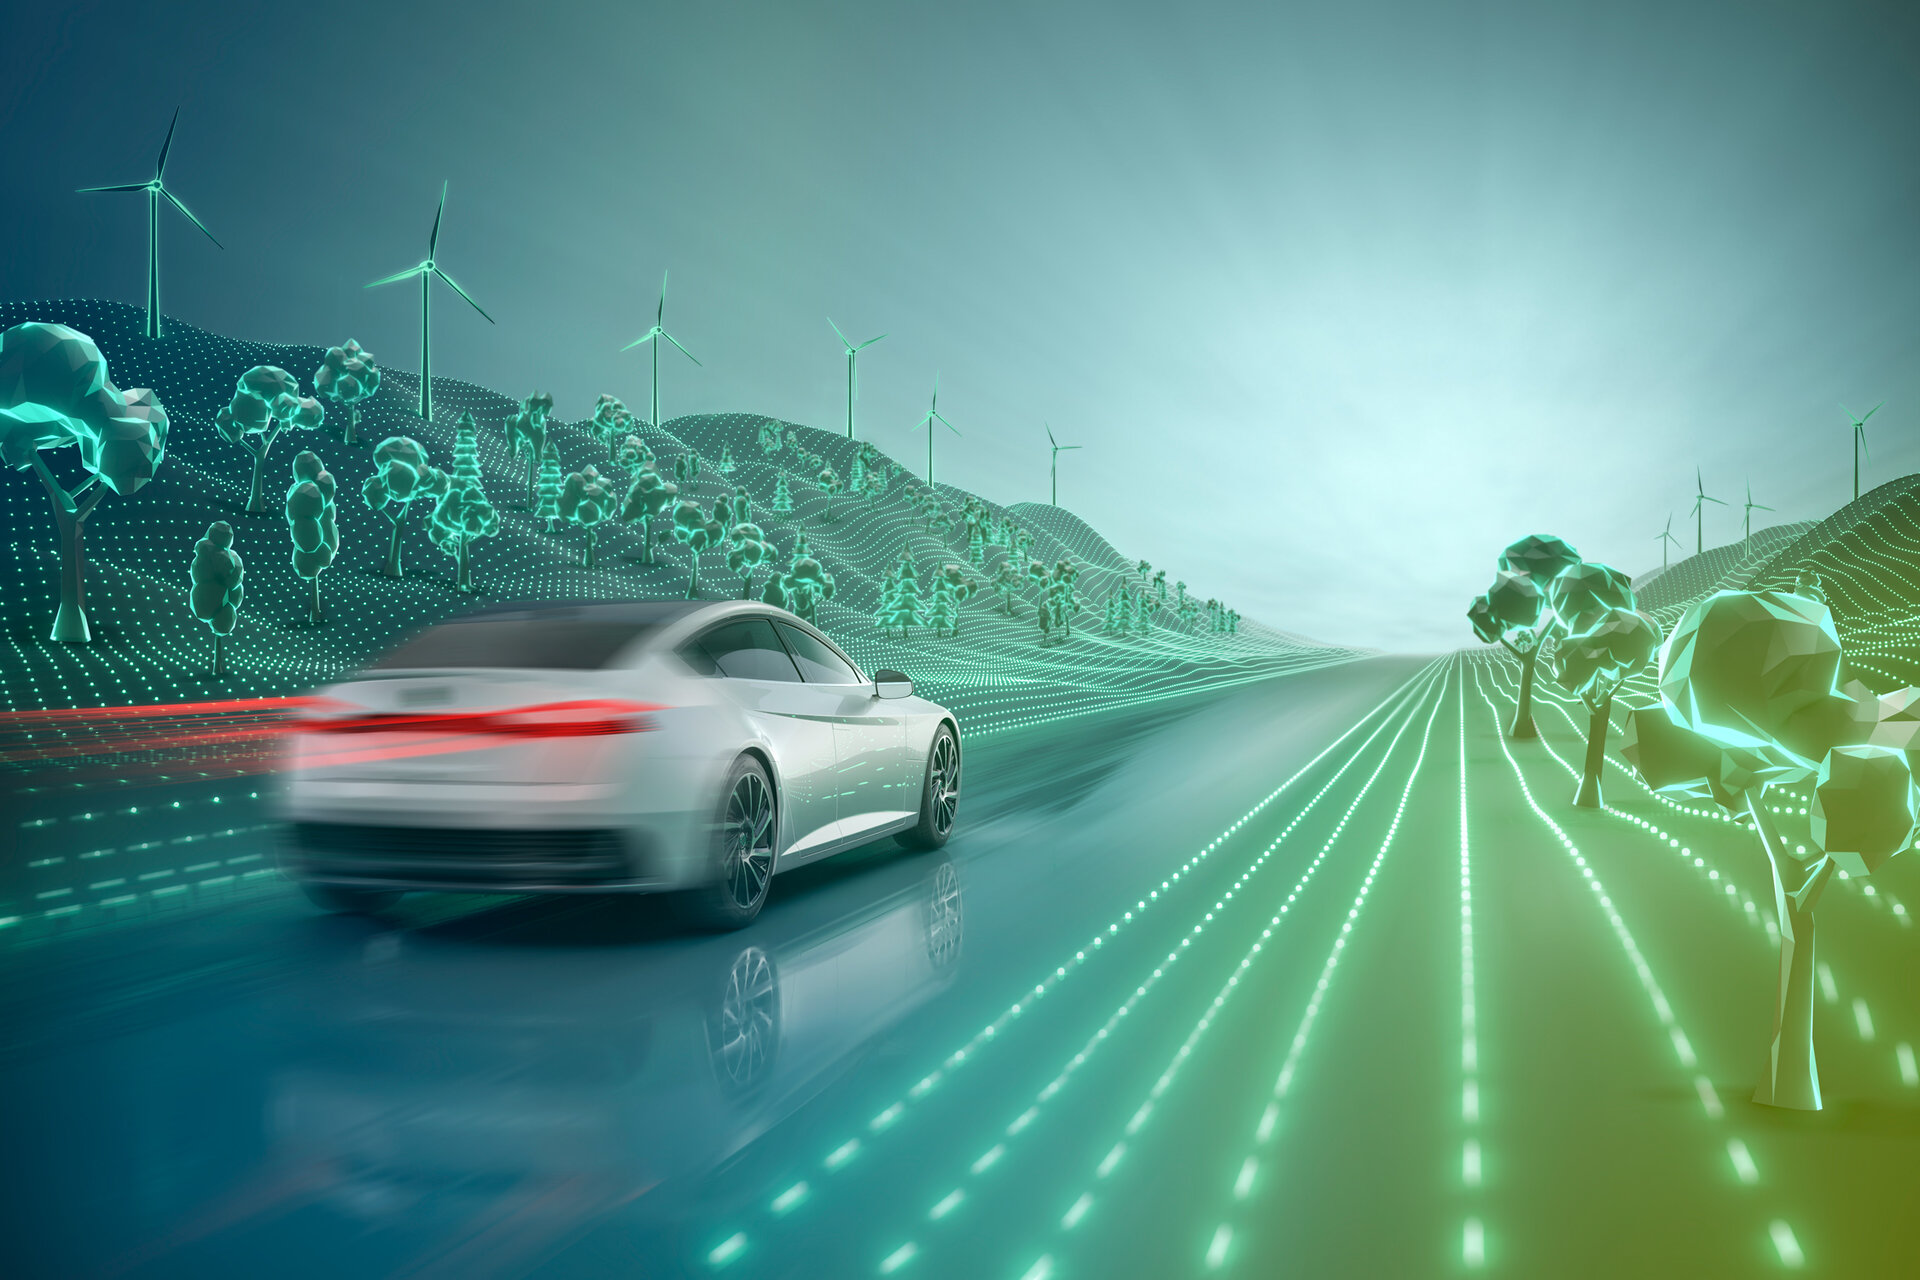  Modern electric car driving through futuristic environment.